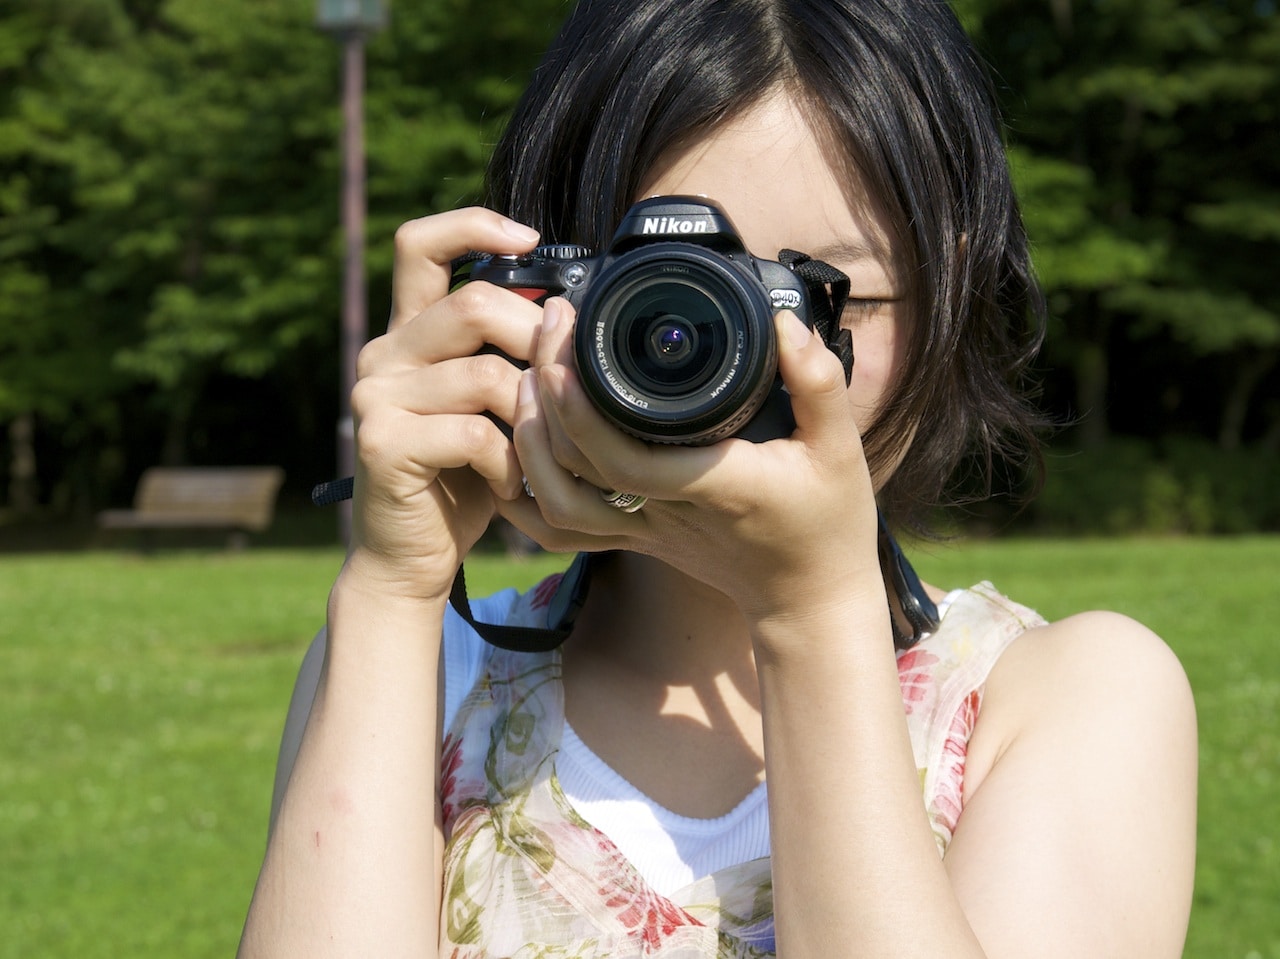 Como segurar a câmera - Fotografias